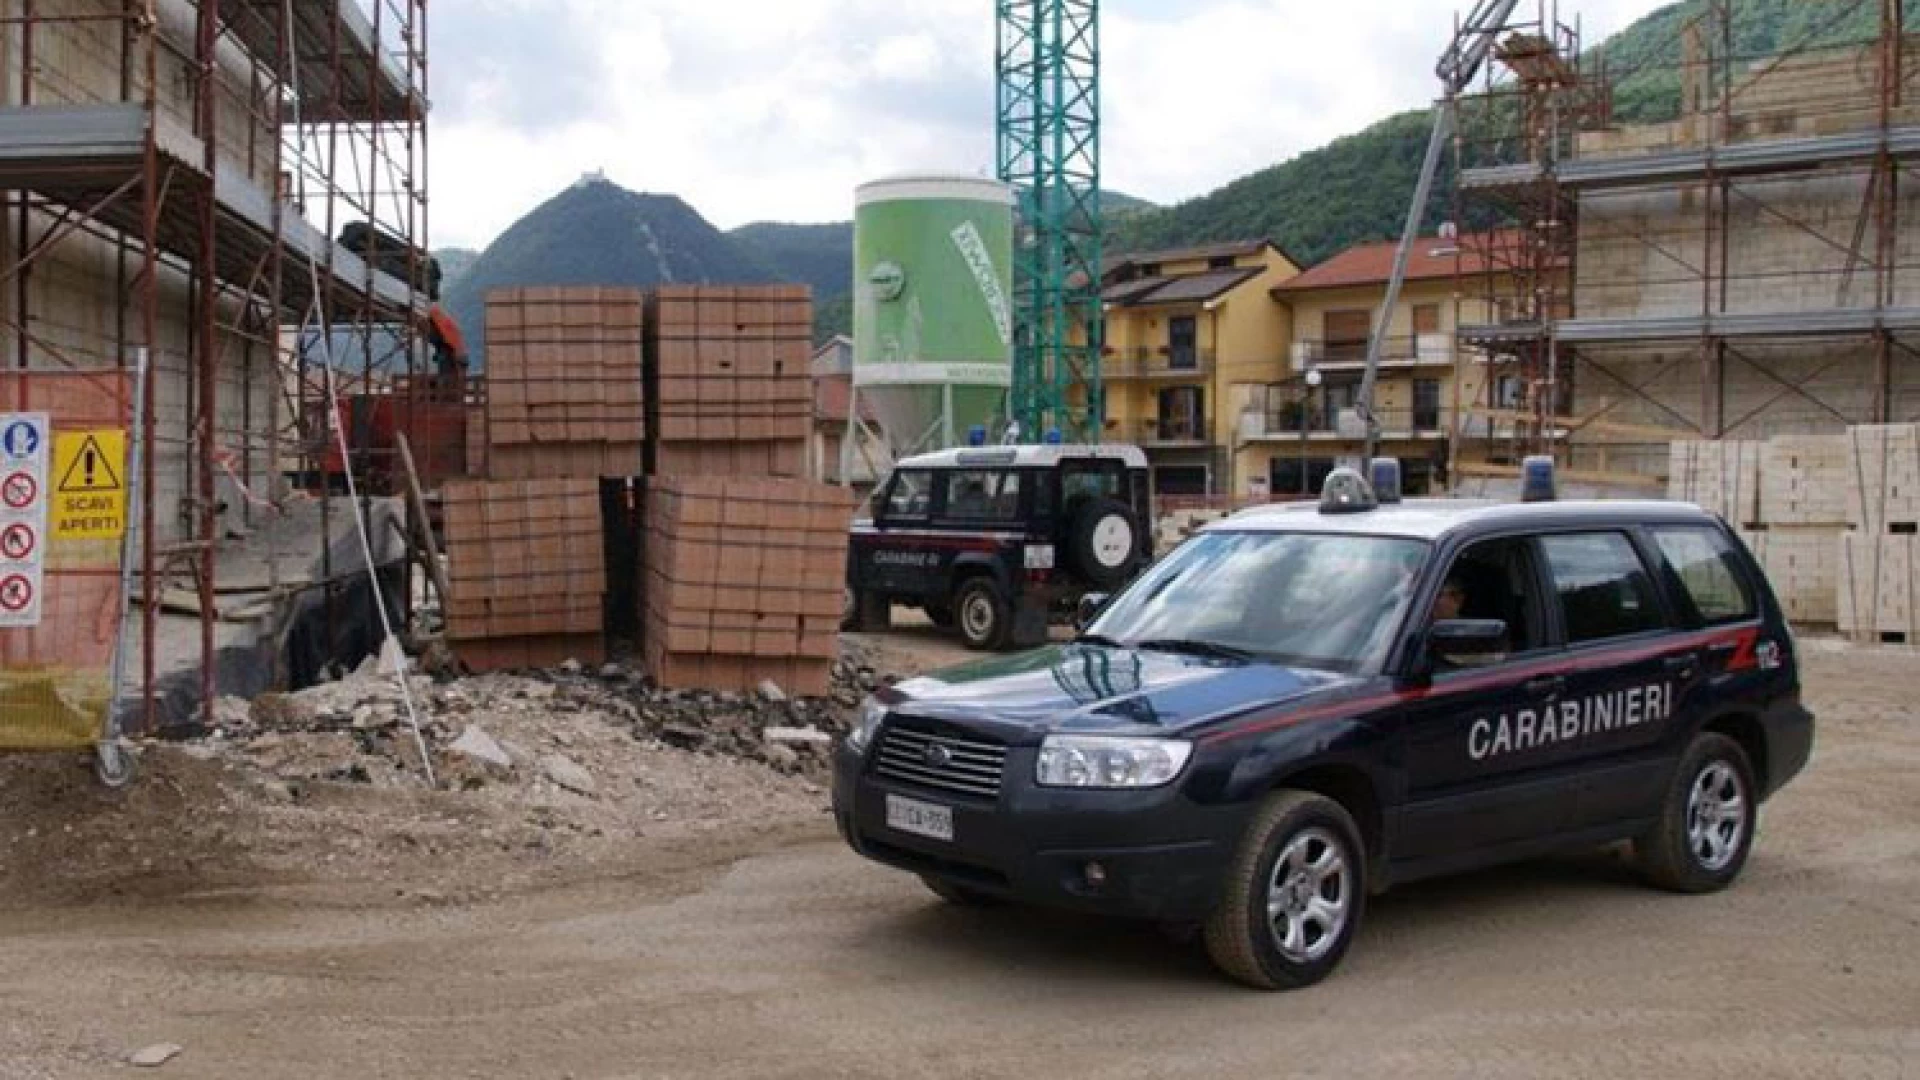 Isernia: Carabinieri in azione per la tutela dell’ambiente e del lavoro,   cinque persone finiscono nei guai.